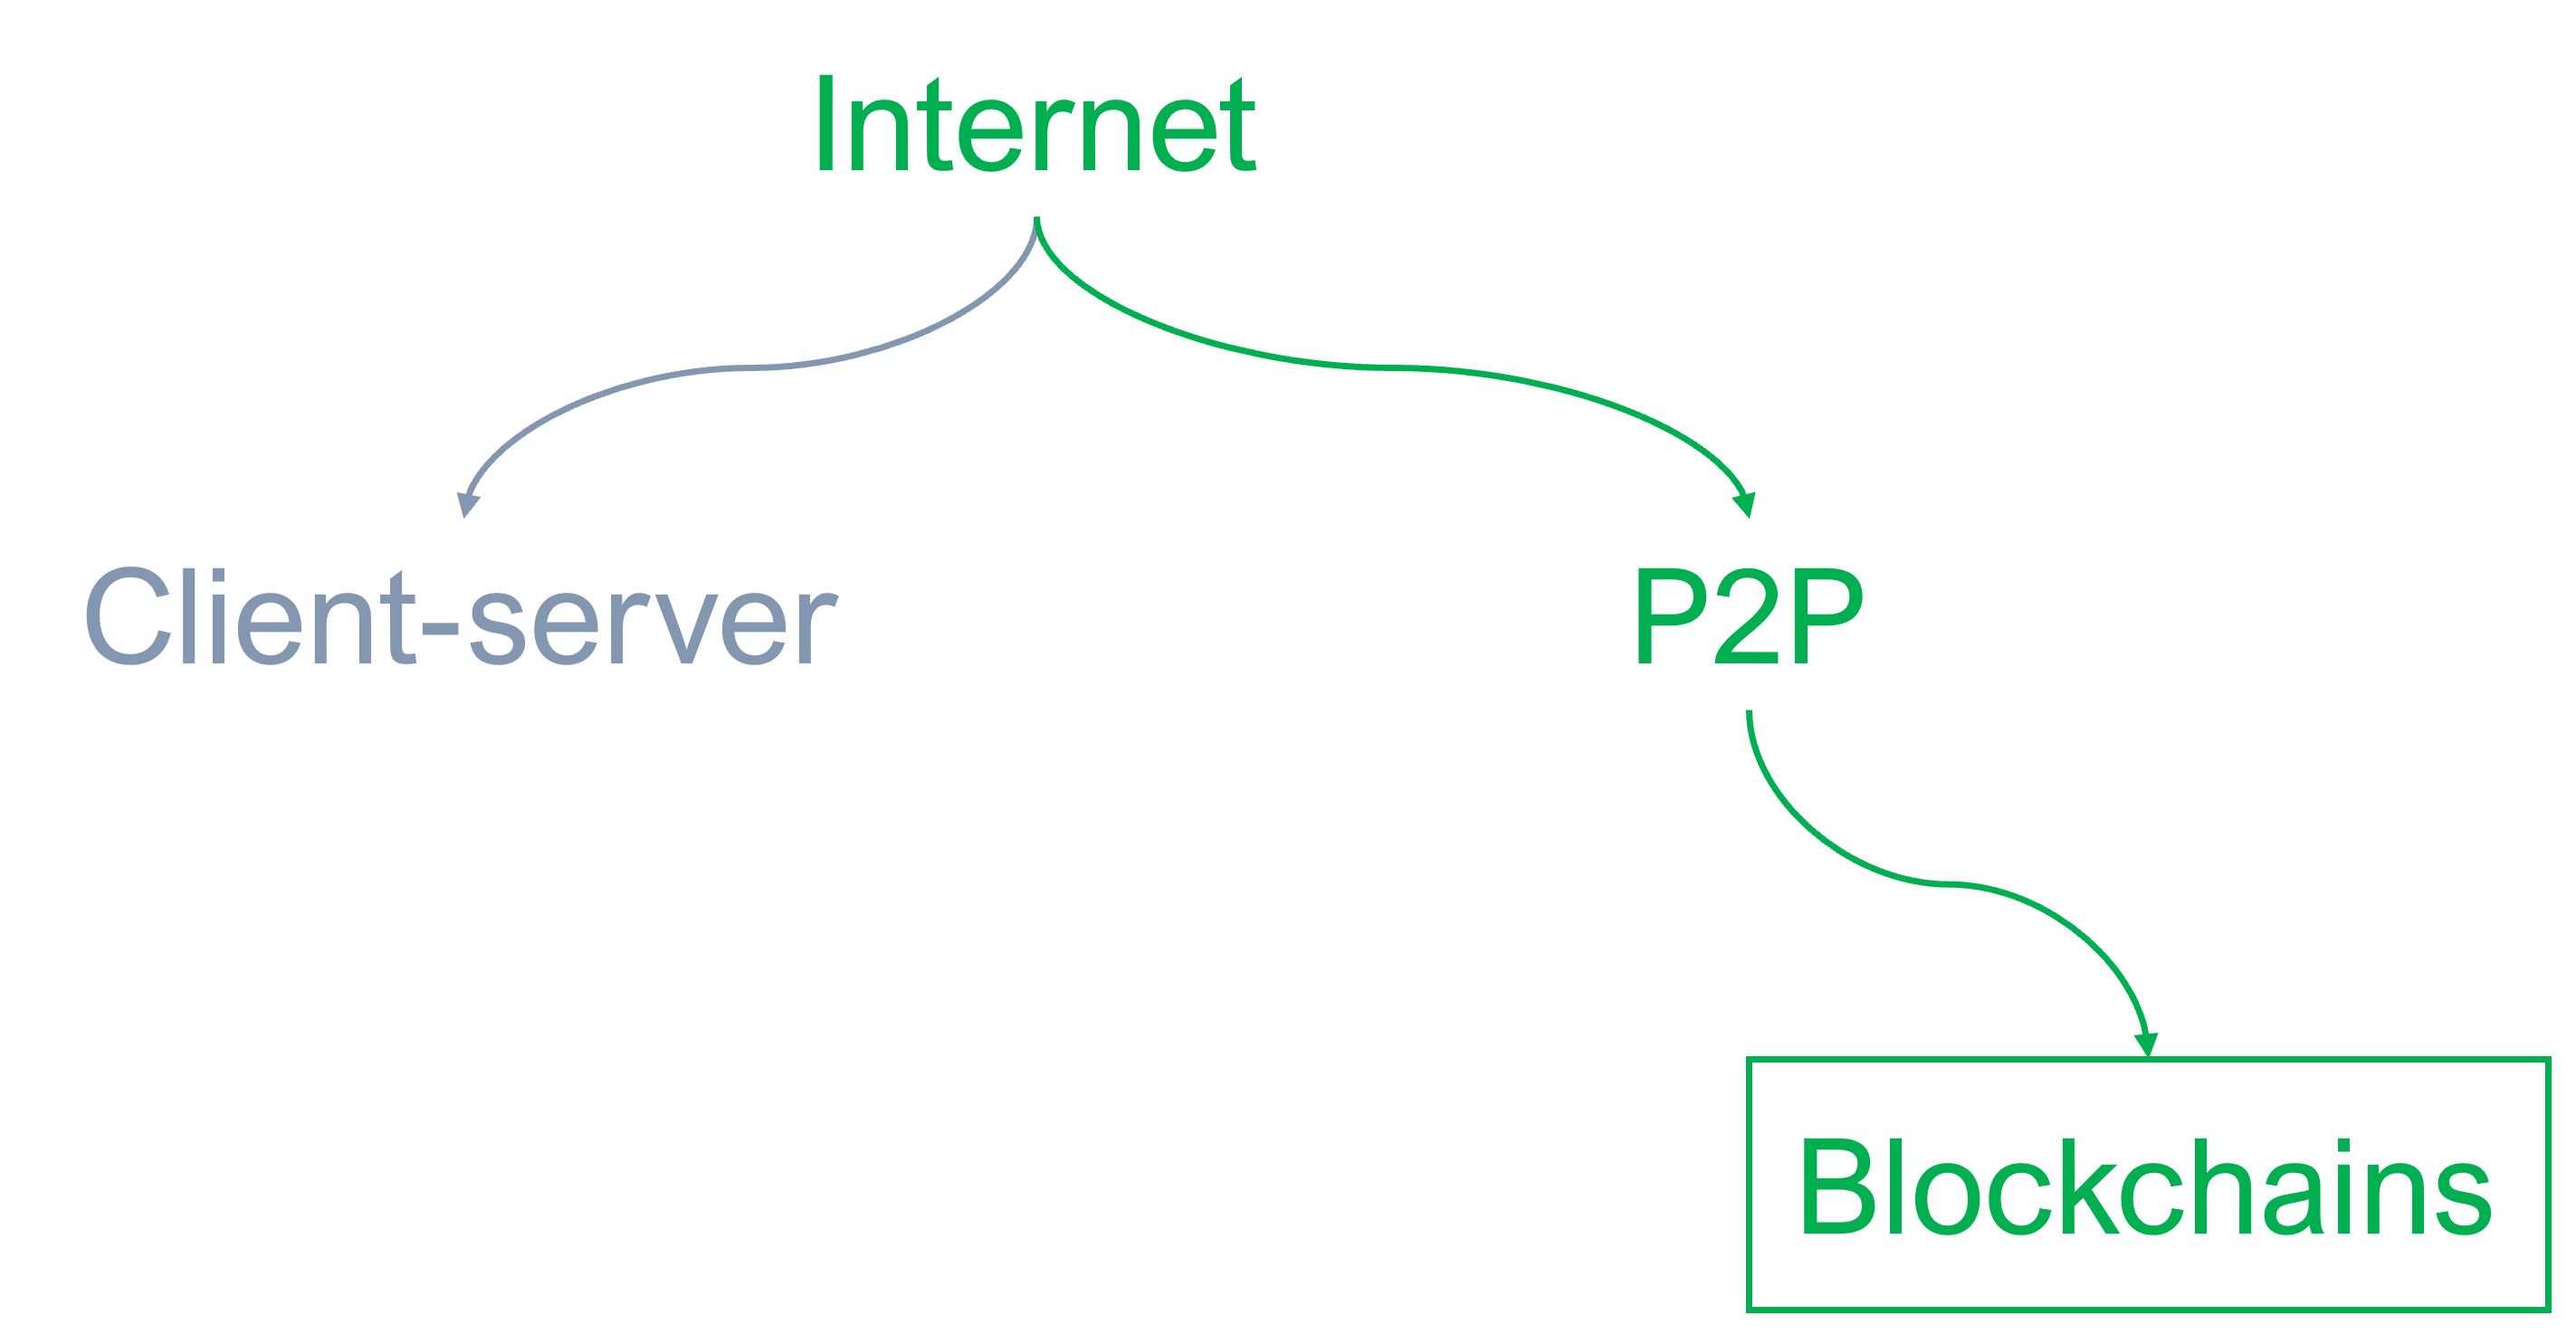 Blockchains under P2P